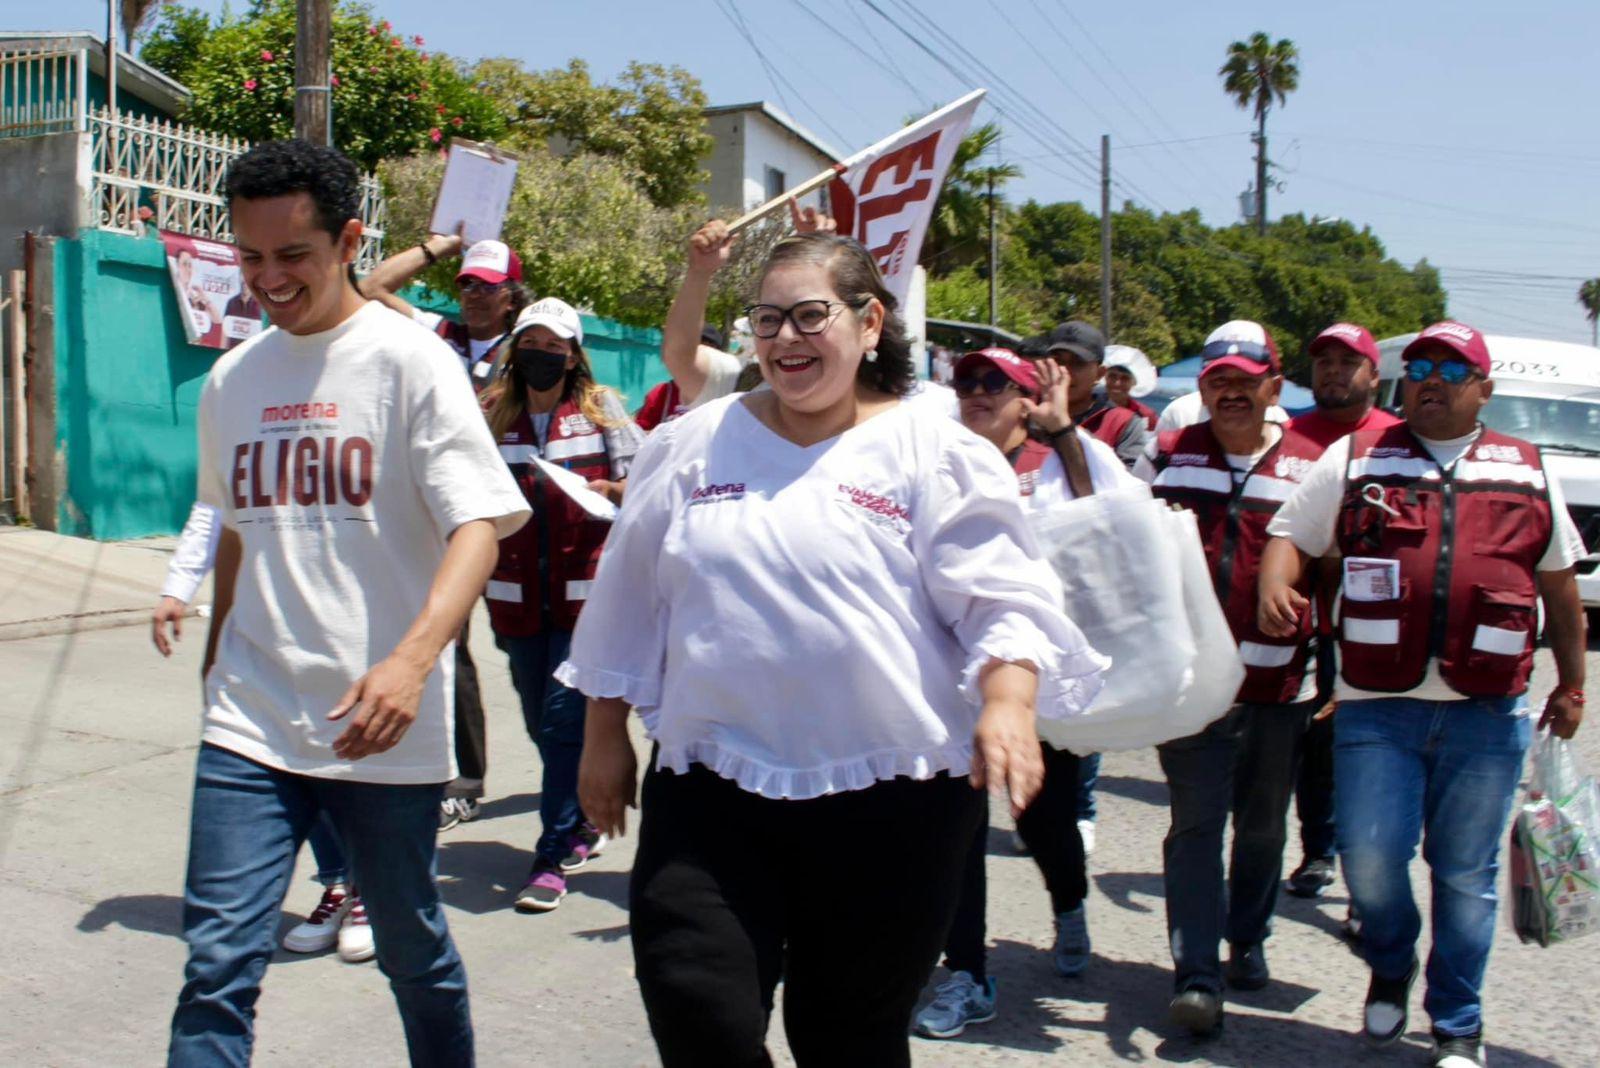 Evangelina Moreno impulsa la figura femenina en la política: “Las mujeres también podemos tomar decisiones”